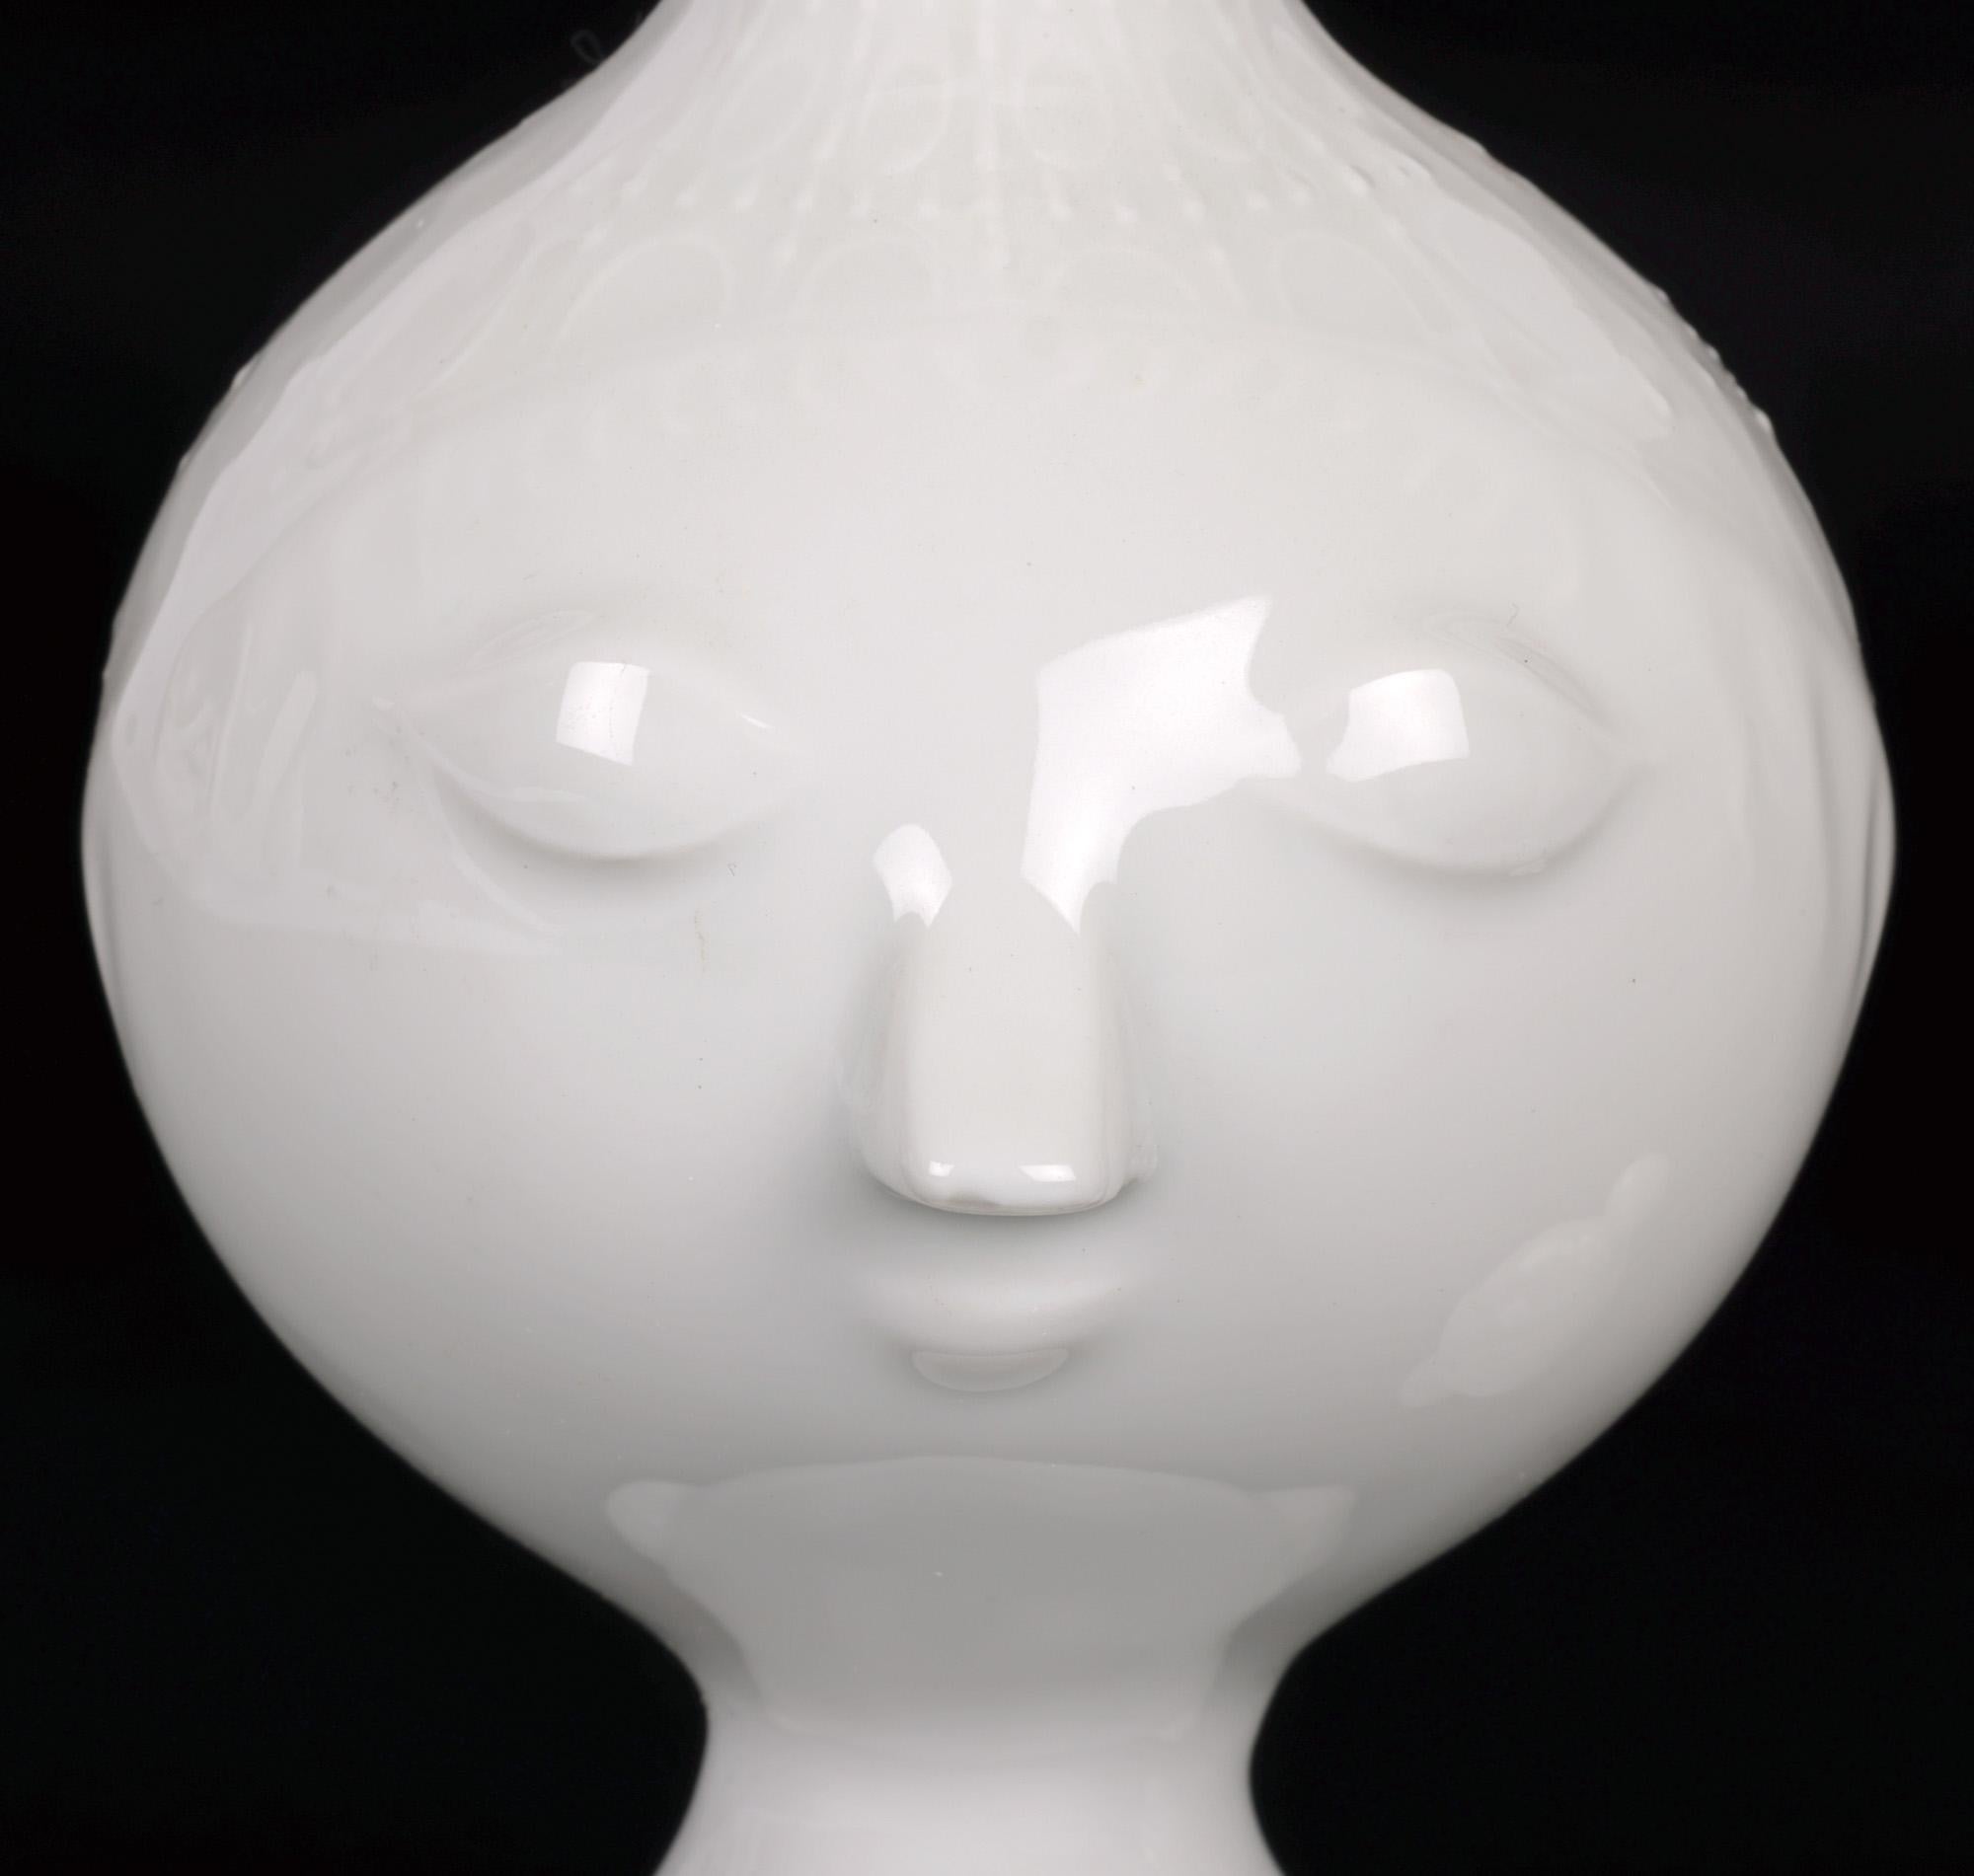 Ein sehr stilvolles Exemplar dieser charmanten Rosenthal-Porzellan-Deckelkanne aus der Mitte des Jahrhunderts, die von dem bekannten dänischen Künstler Bjorn Wiinblad (1918-2006) als Büste eines jungen Mädchens modelliert wurde. Diese fein